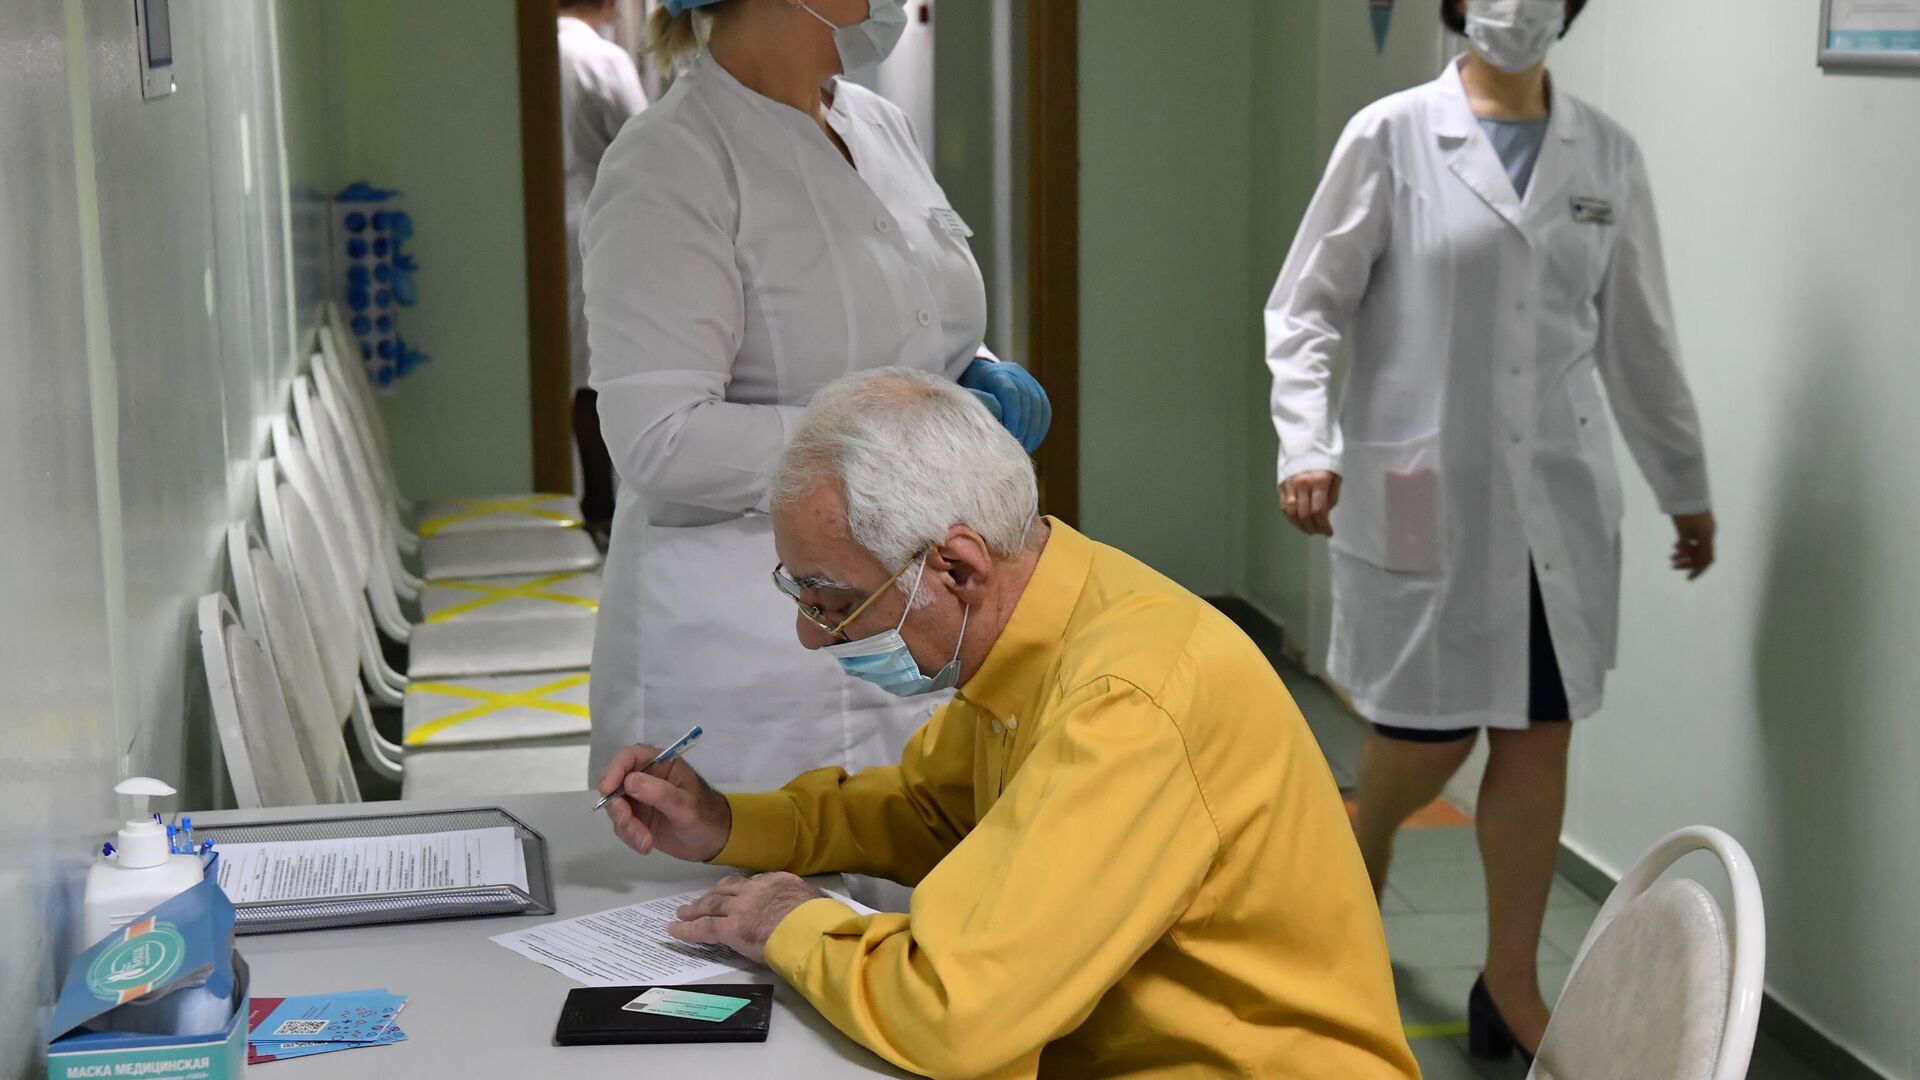 Медработники и пожилой пациент перед вакцинацией от коронавируса COVID-19 вакциной Спутник V в Москве - РИА Новости, 1920, 20.04.2021